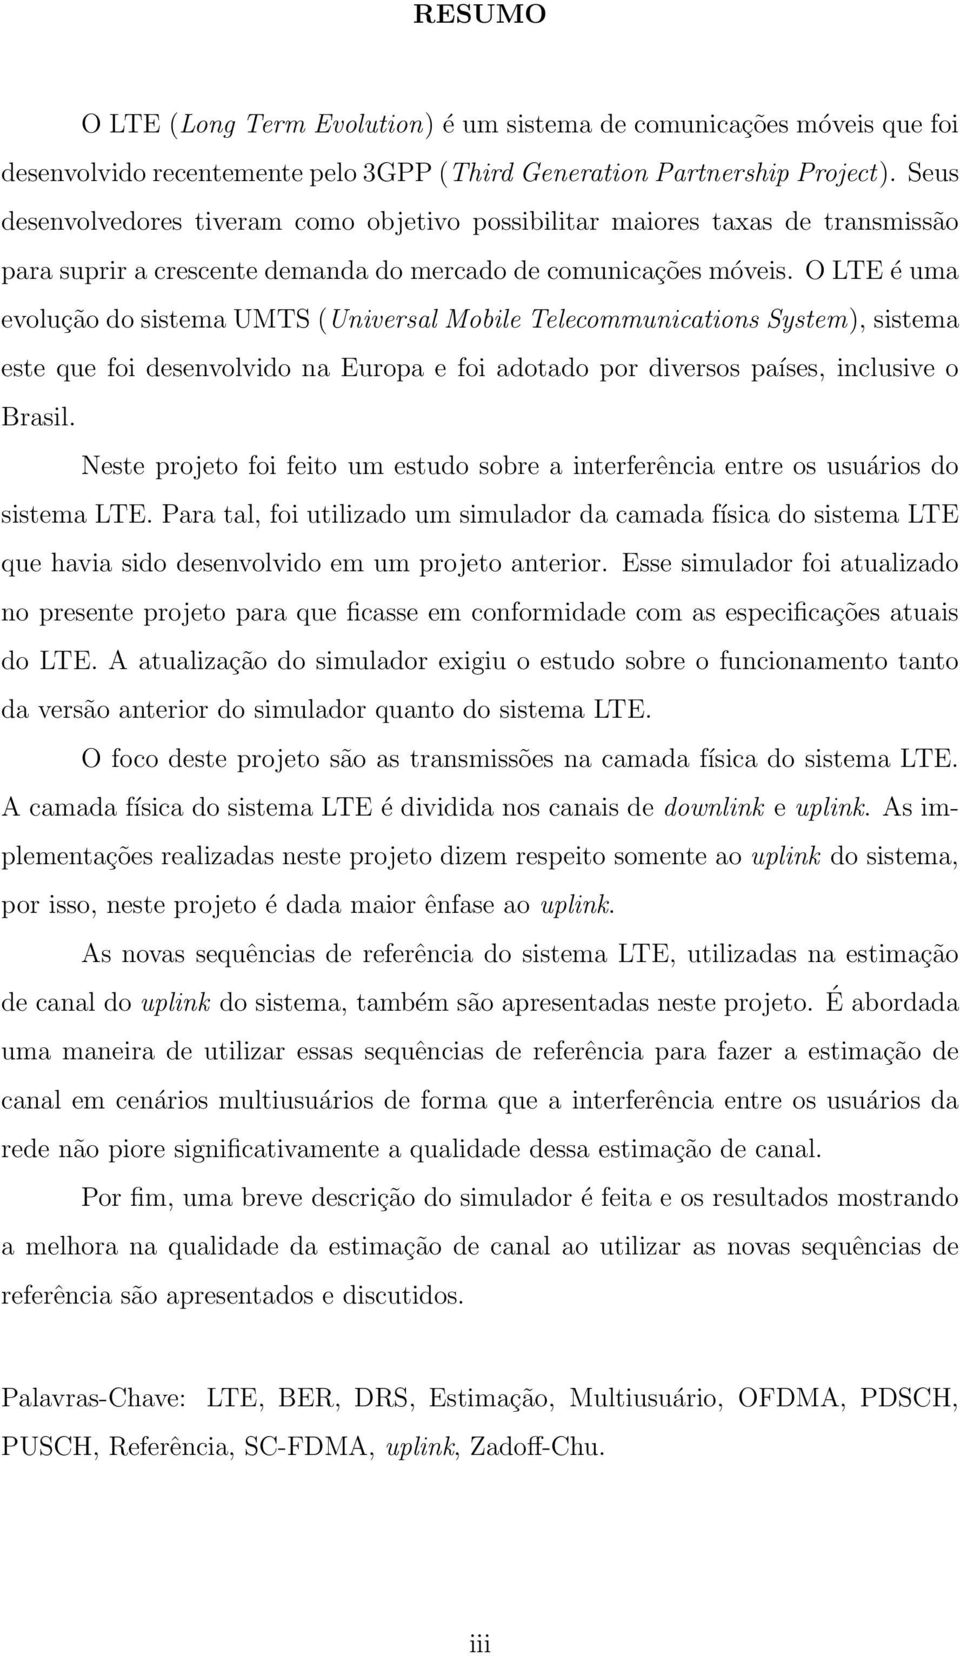 O LTE é uma evolução do sistema UMTS (Universal Mobile Telecommunications System), sistema este que foi desenvolvido na Europa e foi adotado por diversos países, inclusive o Brasil.